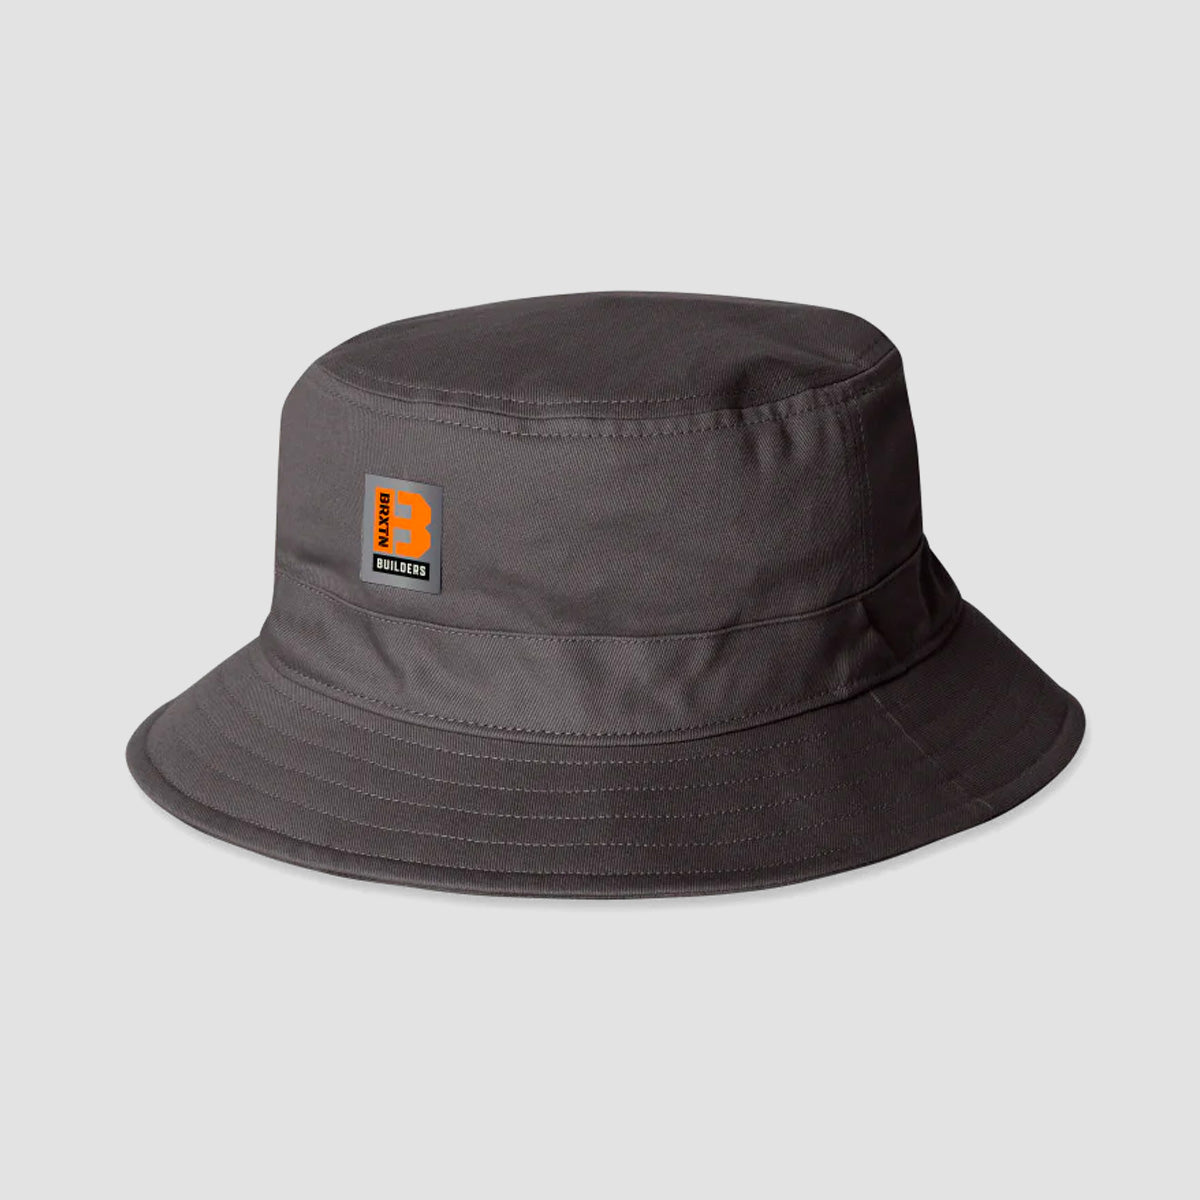 Brixton Builders Reversible Bucket Hat Charcoal/Black